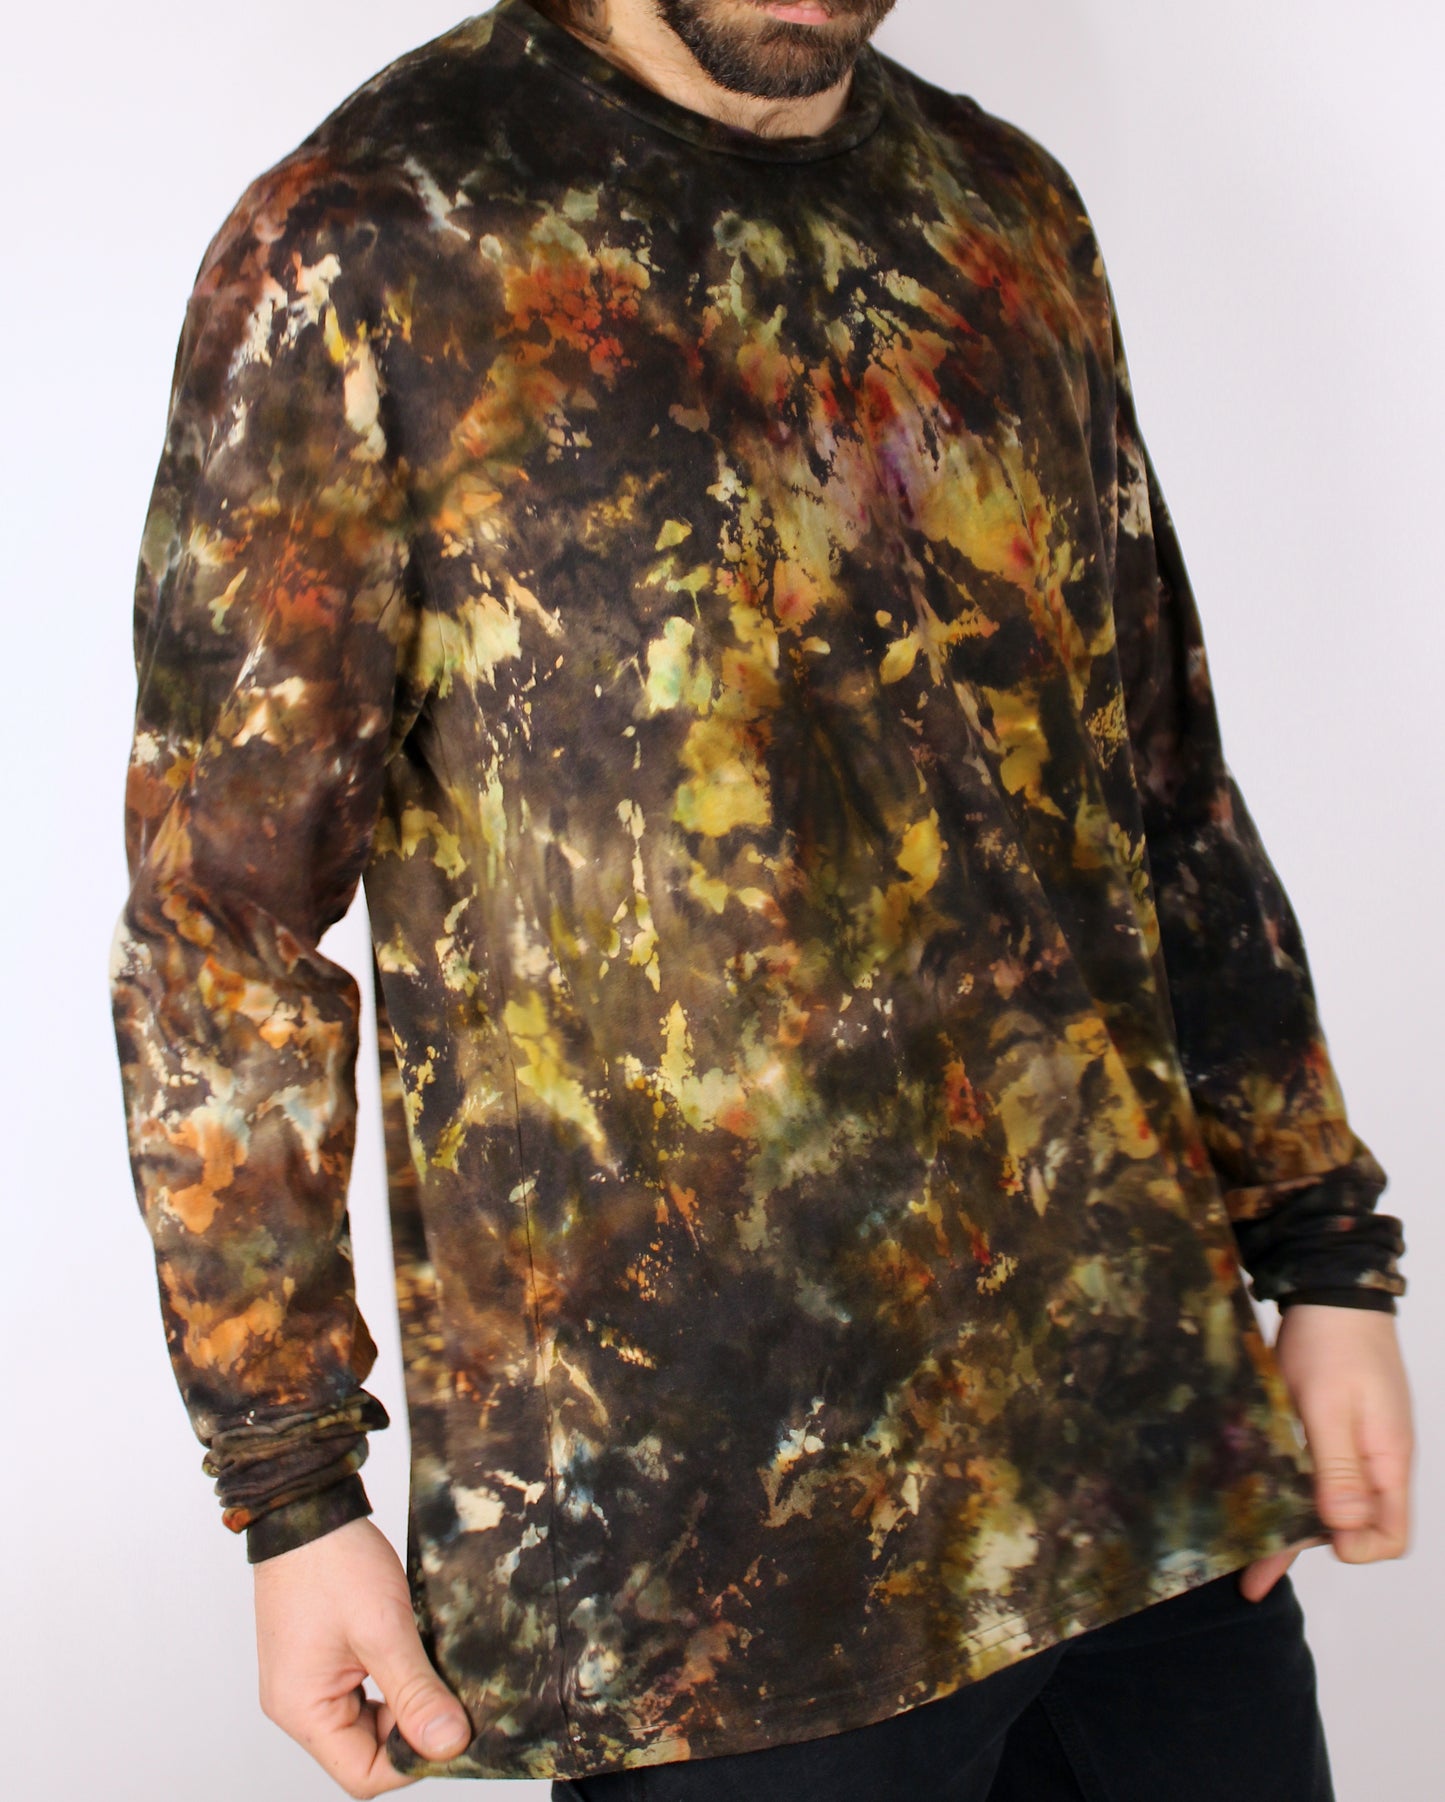 2XL - “Autumn Rorschach ” Reverse Dye Long Sleeve Shirt